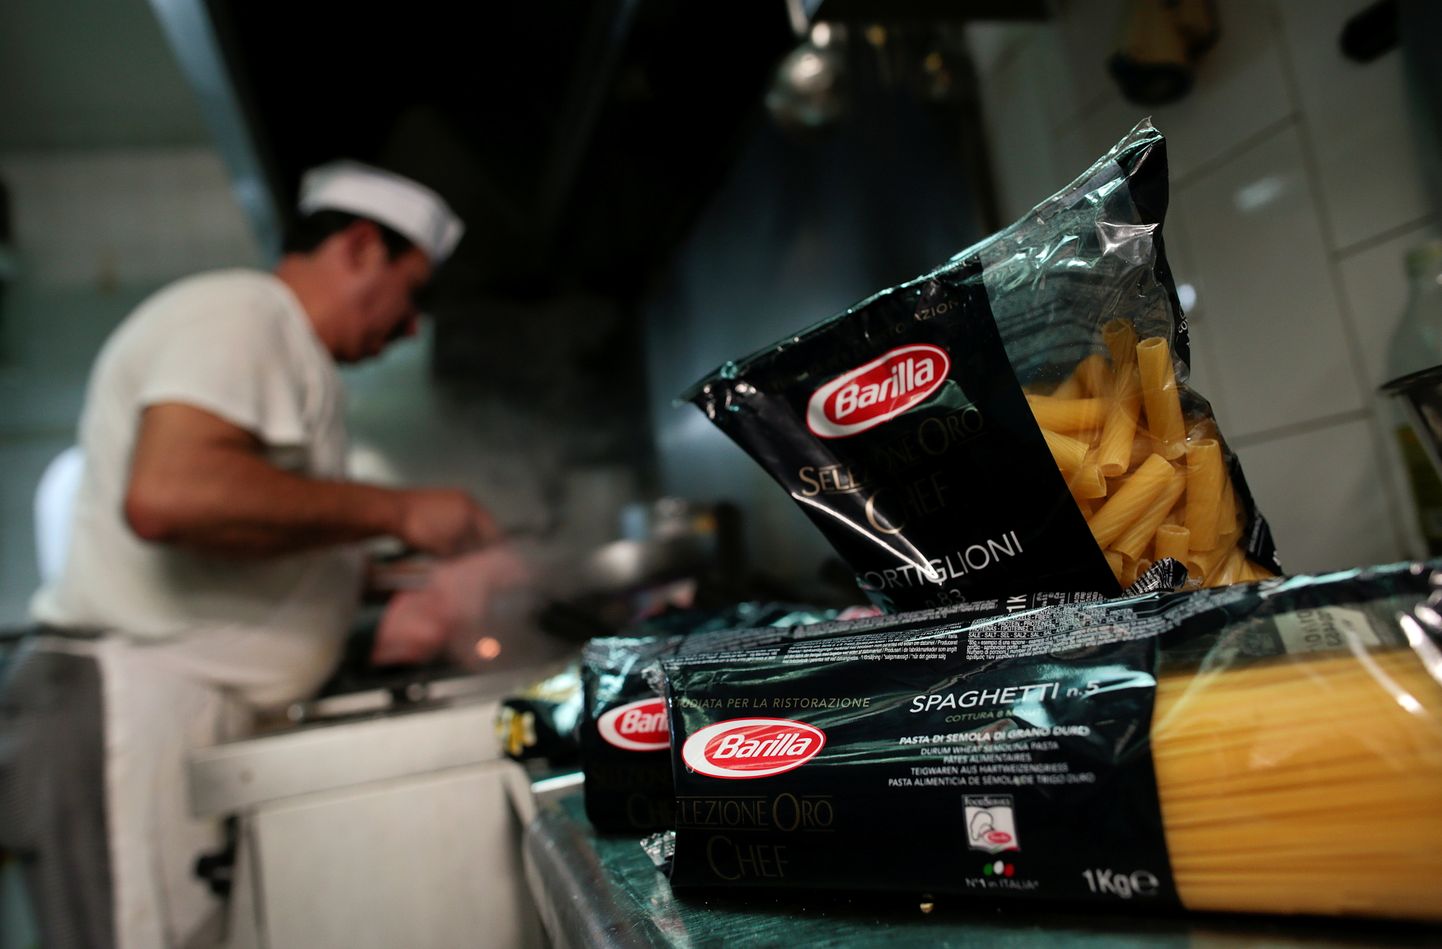 Itaalia ärimees Guido Barilla peab vabrikut ja veskit ka Venemaal. Pildil kokk Roomas restorani köögis Barilla pasta pakkide taustal toitu vaaritamas.